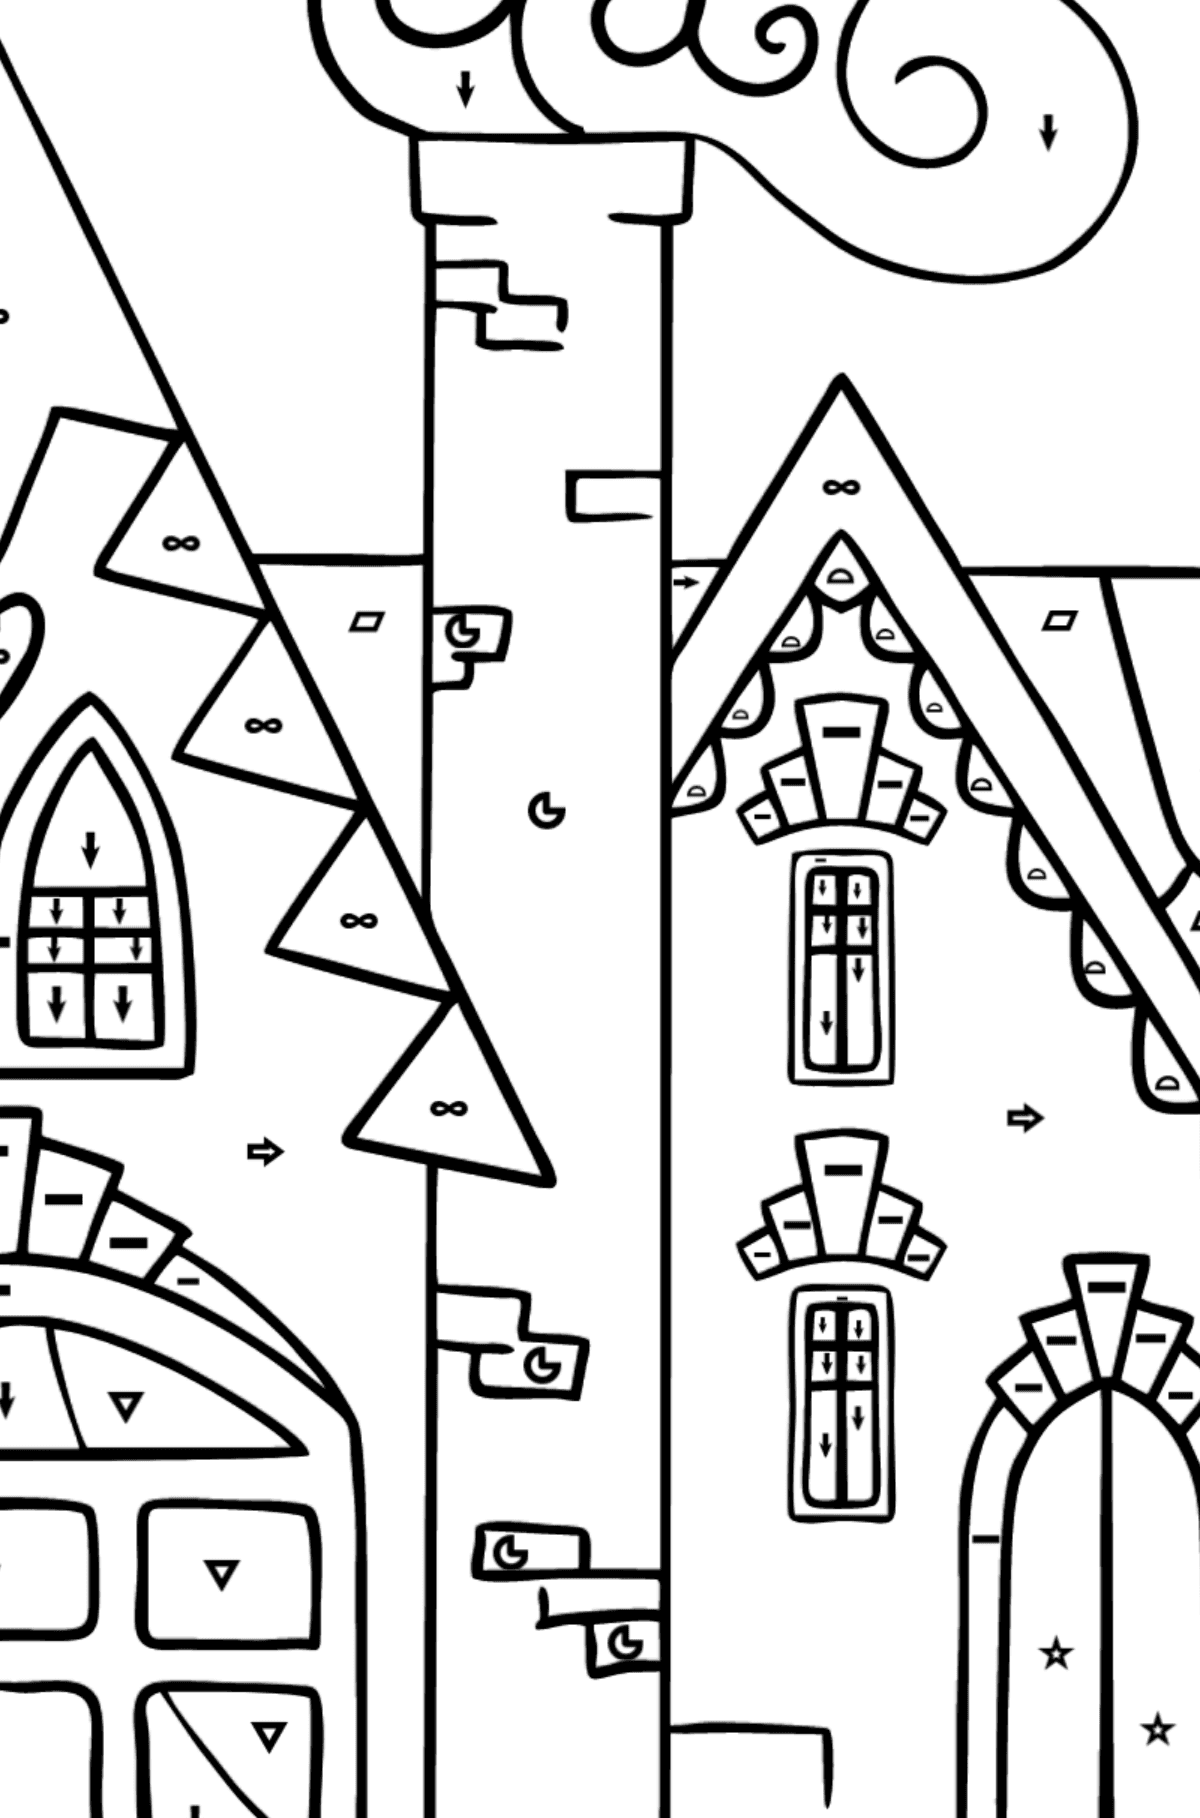 Czarujący dom kolorowanka (trudna) - Kolorowanie według symboli i figur geometrycznych dla dzieci